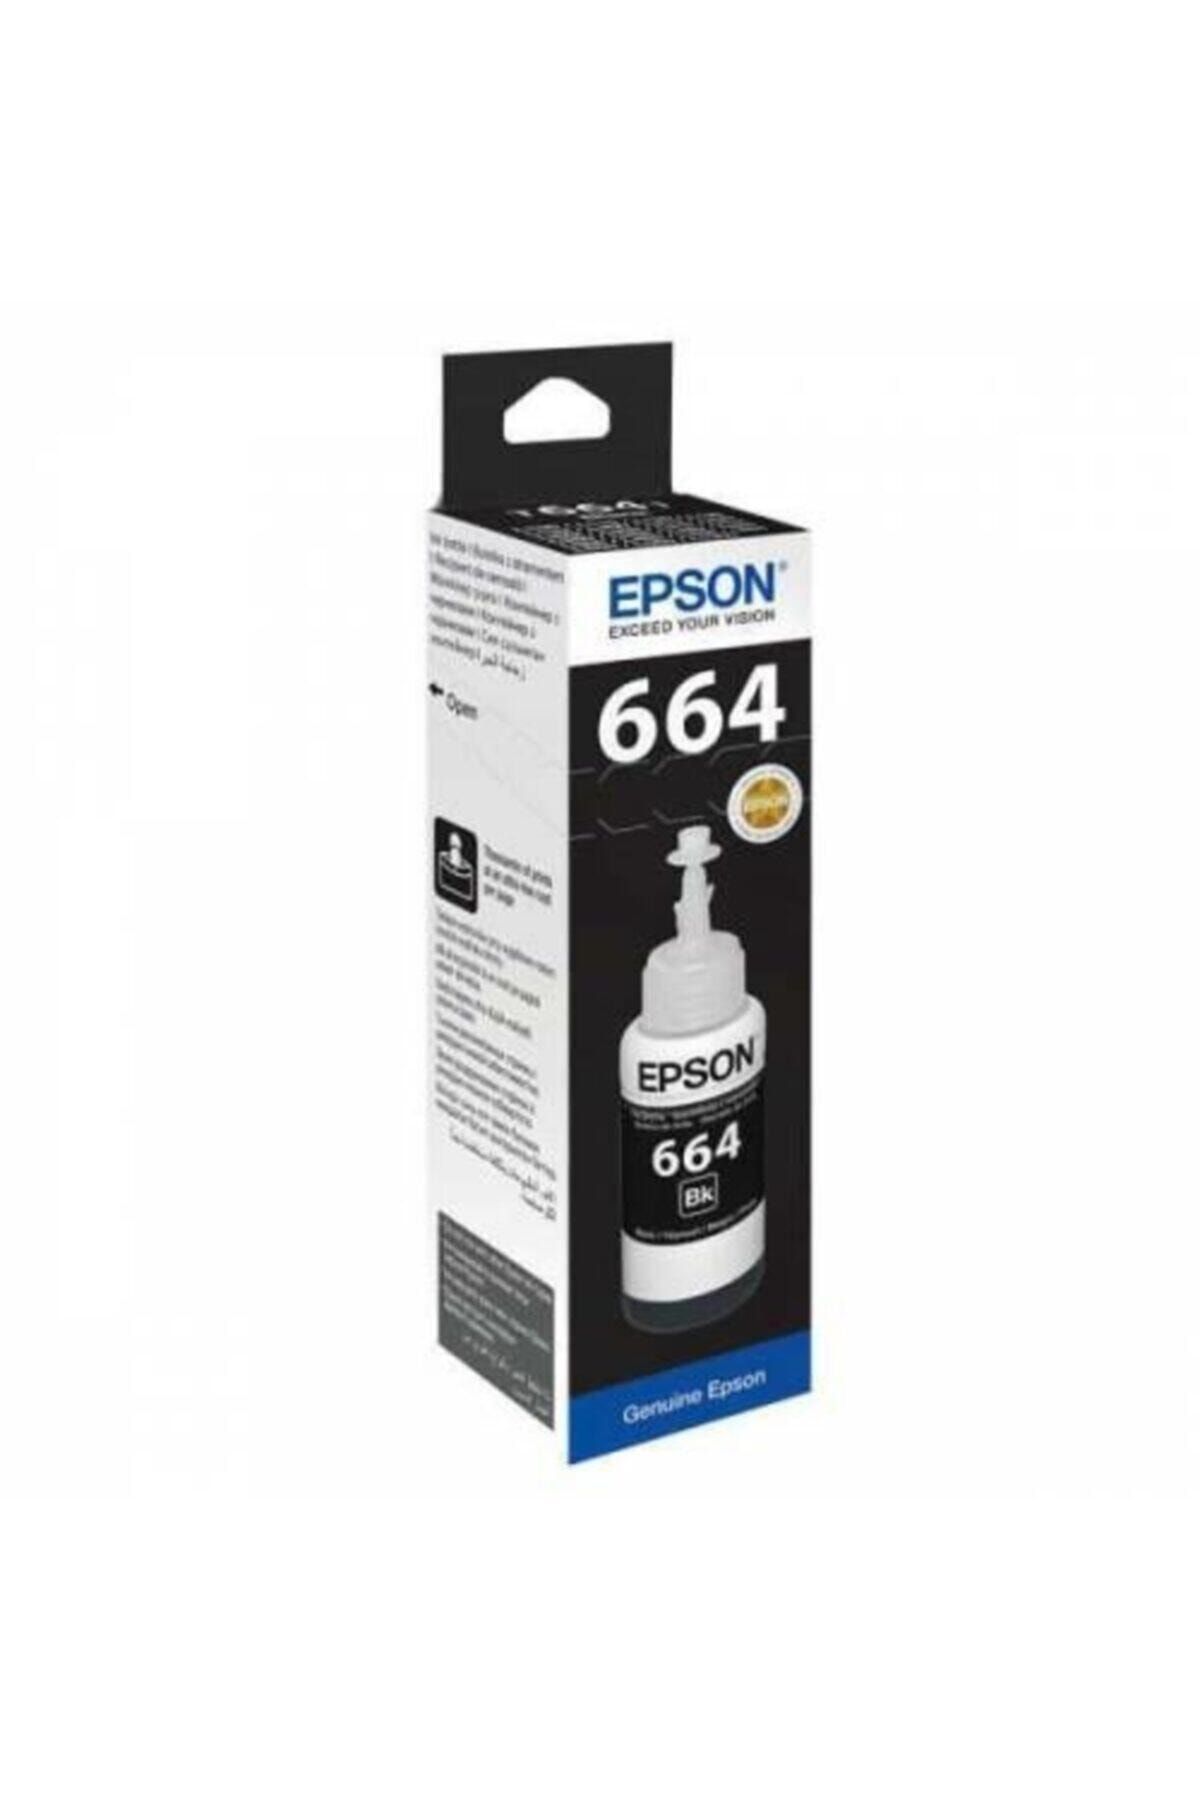 EPSON T6641 Bk L382/l386 / L365 / L220 / L565 /3050/3060/1300